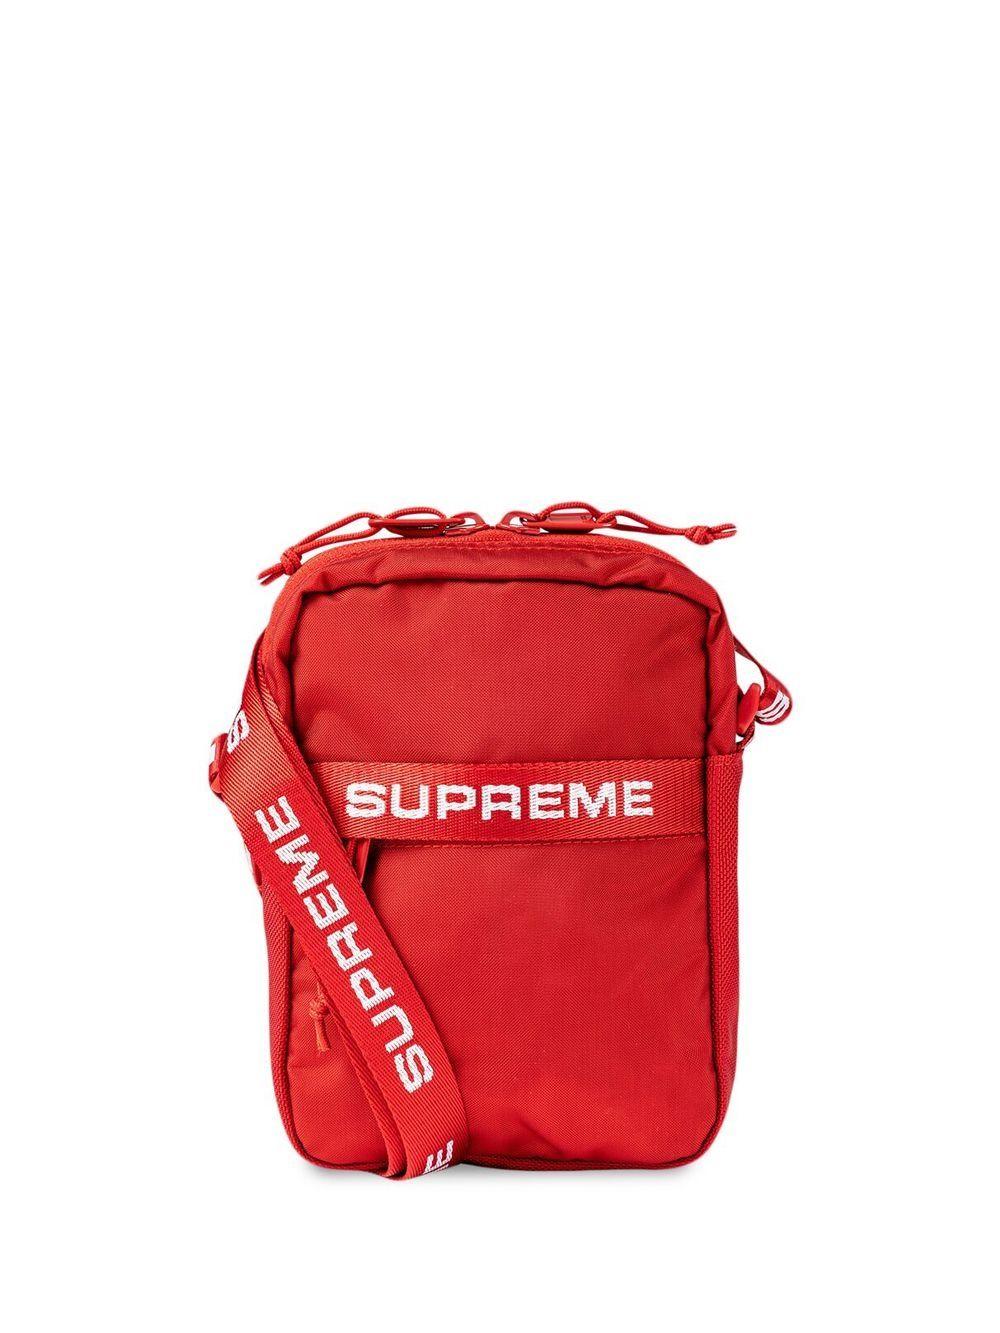 Supreme Logo Strap Shoulder Bag - ShopStyle